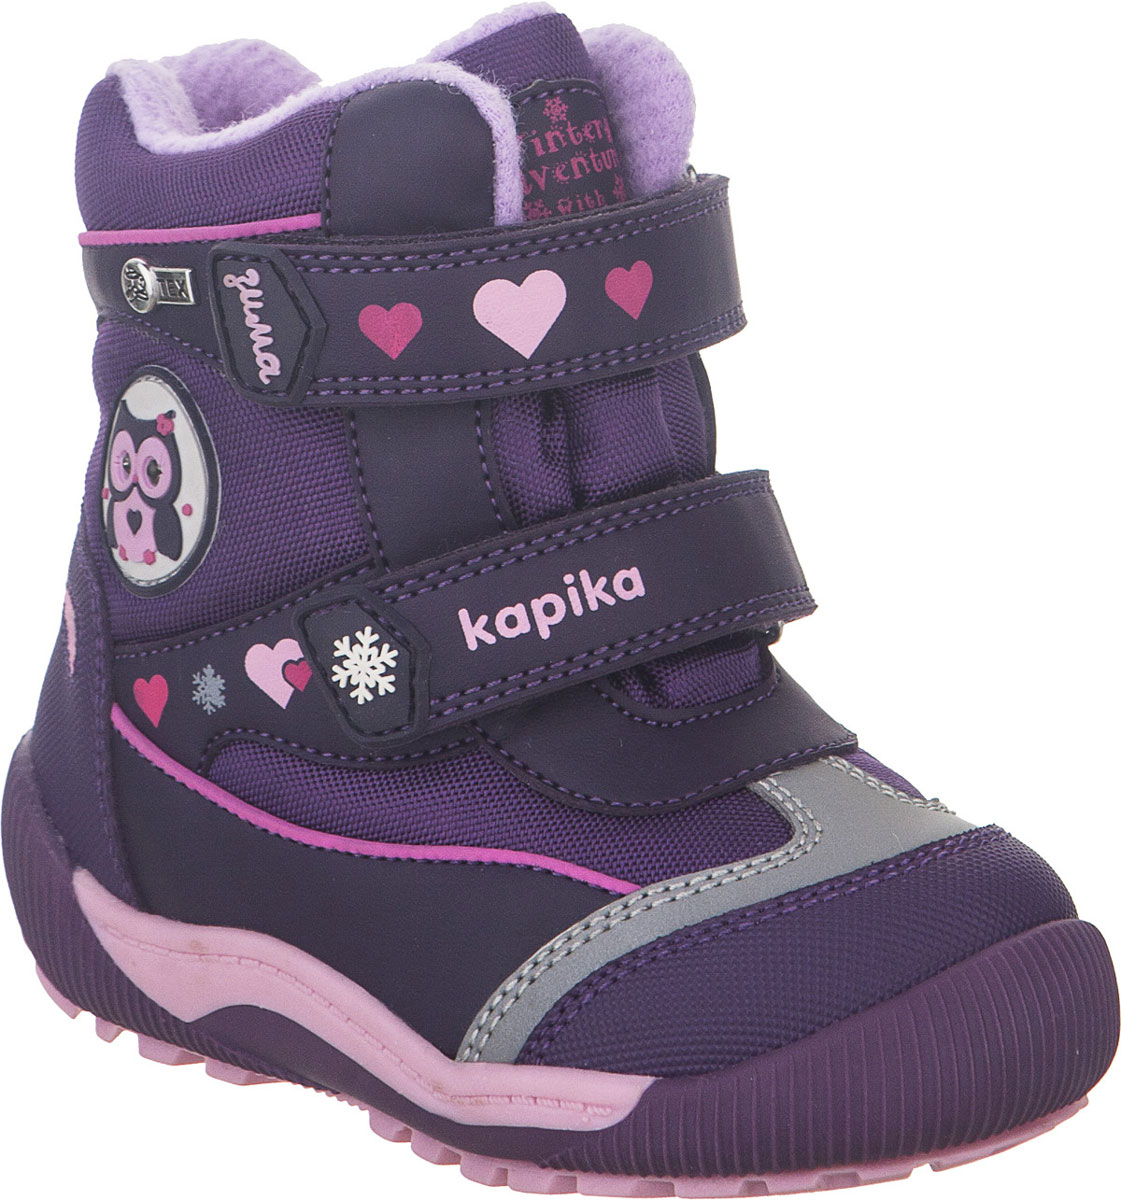 Ботинки для девочки Kapika, цвет: фиолетовый. 41215-2. Размер 23